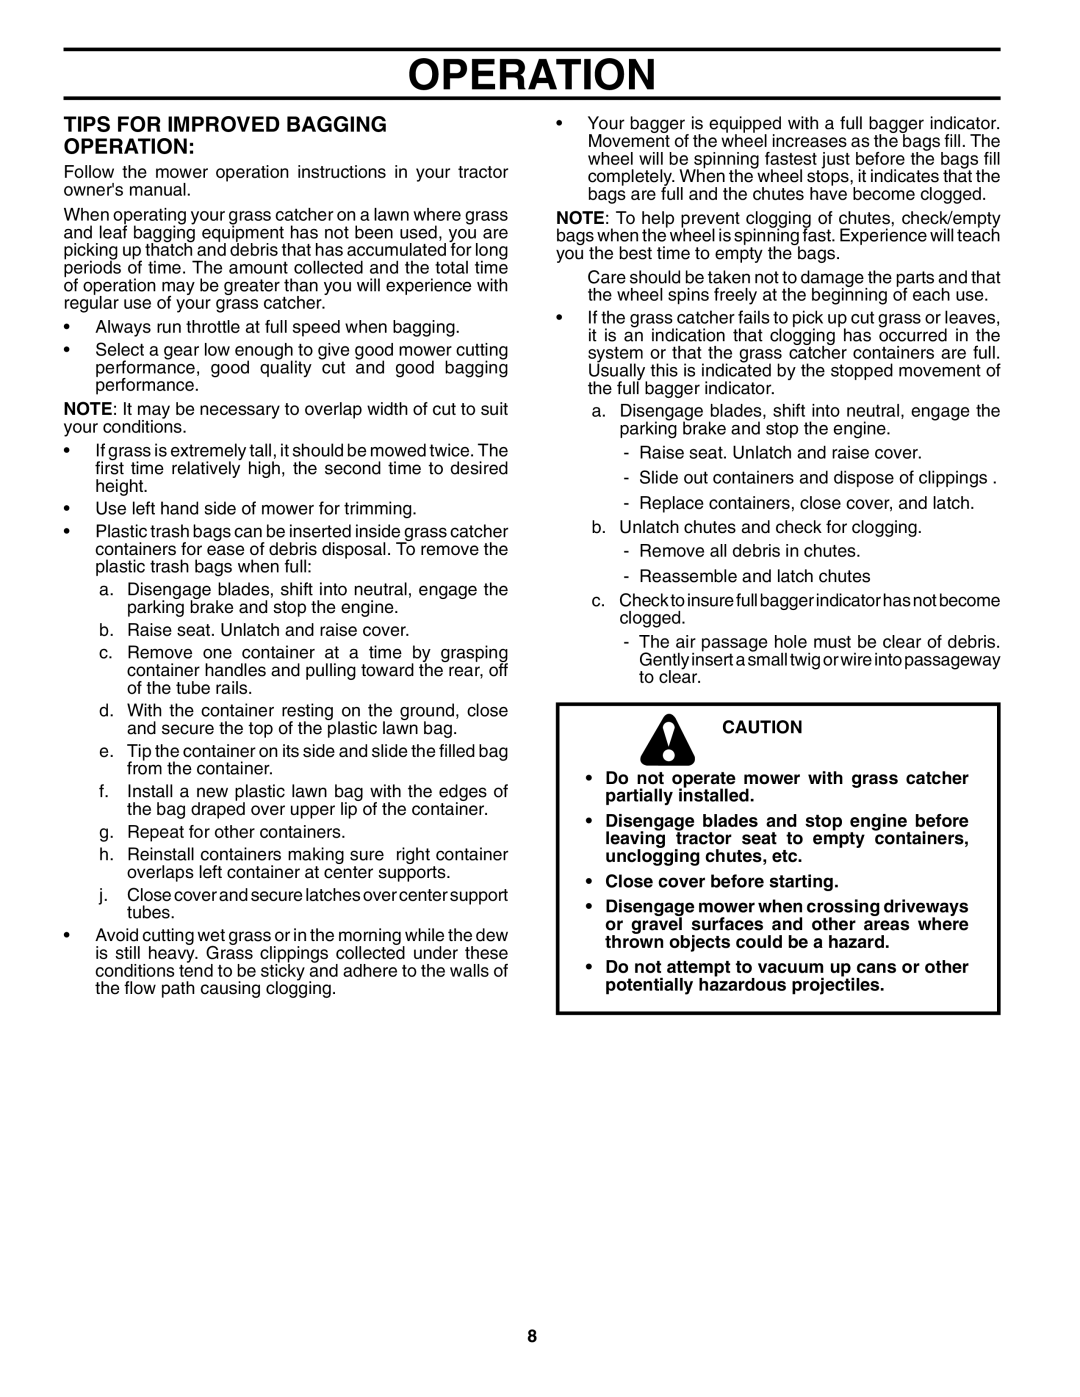 Husqvarna H246SL owner manual Tips For Improved Bagging Operation 